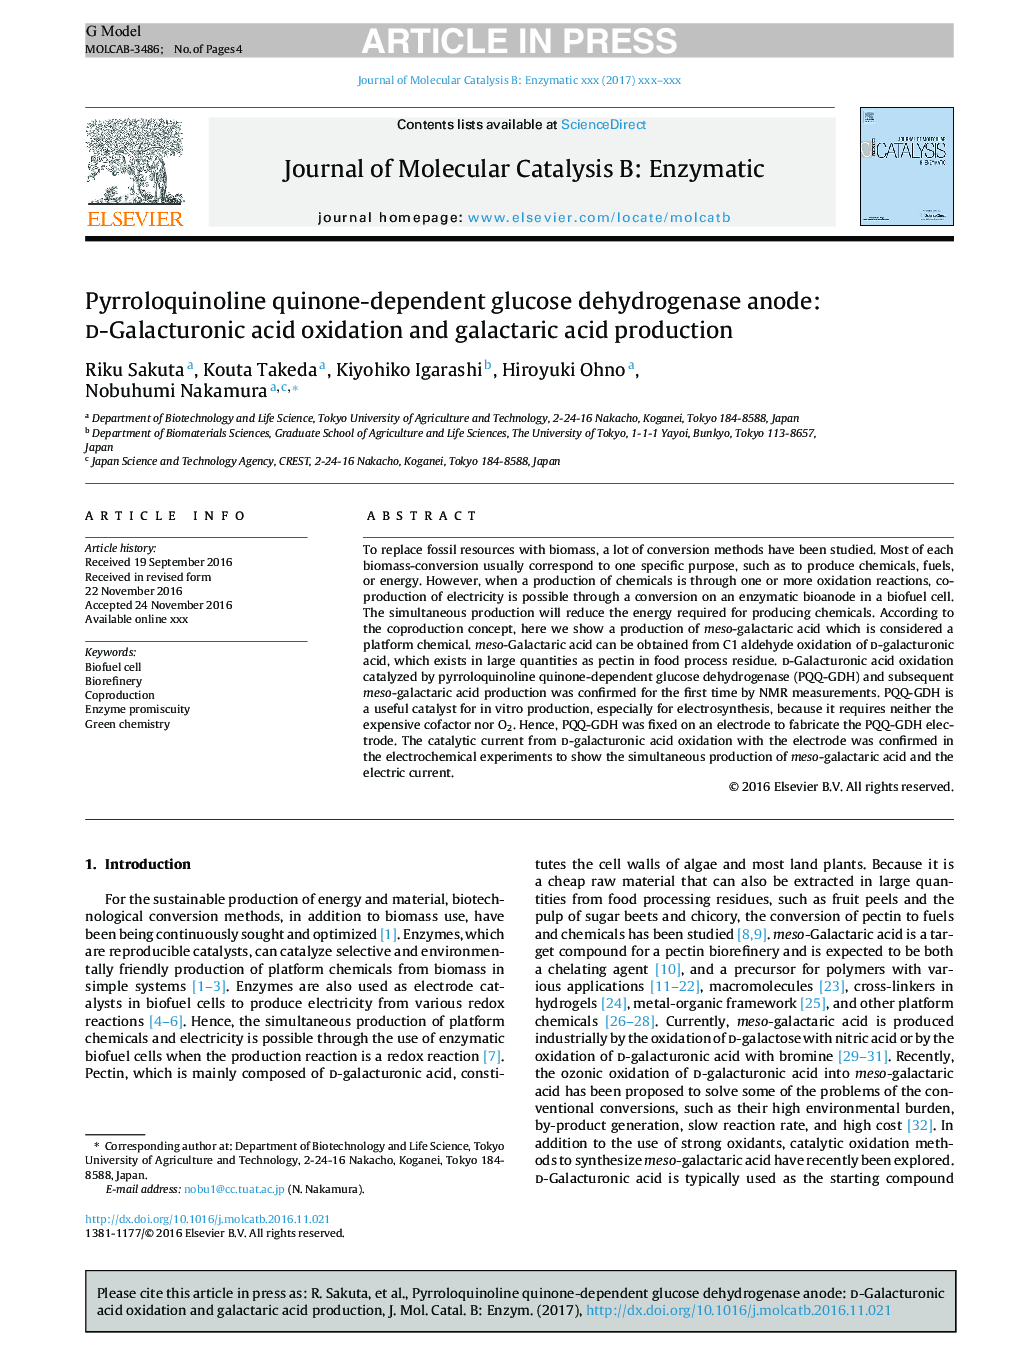 آندروژن گلوکز دهیدروژناز وابسته به پیرولووینولین کینون: اکسیداسیون اسید دالاکورونیک و تولید اسید گالاکتاریک 